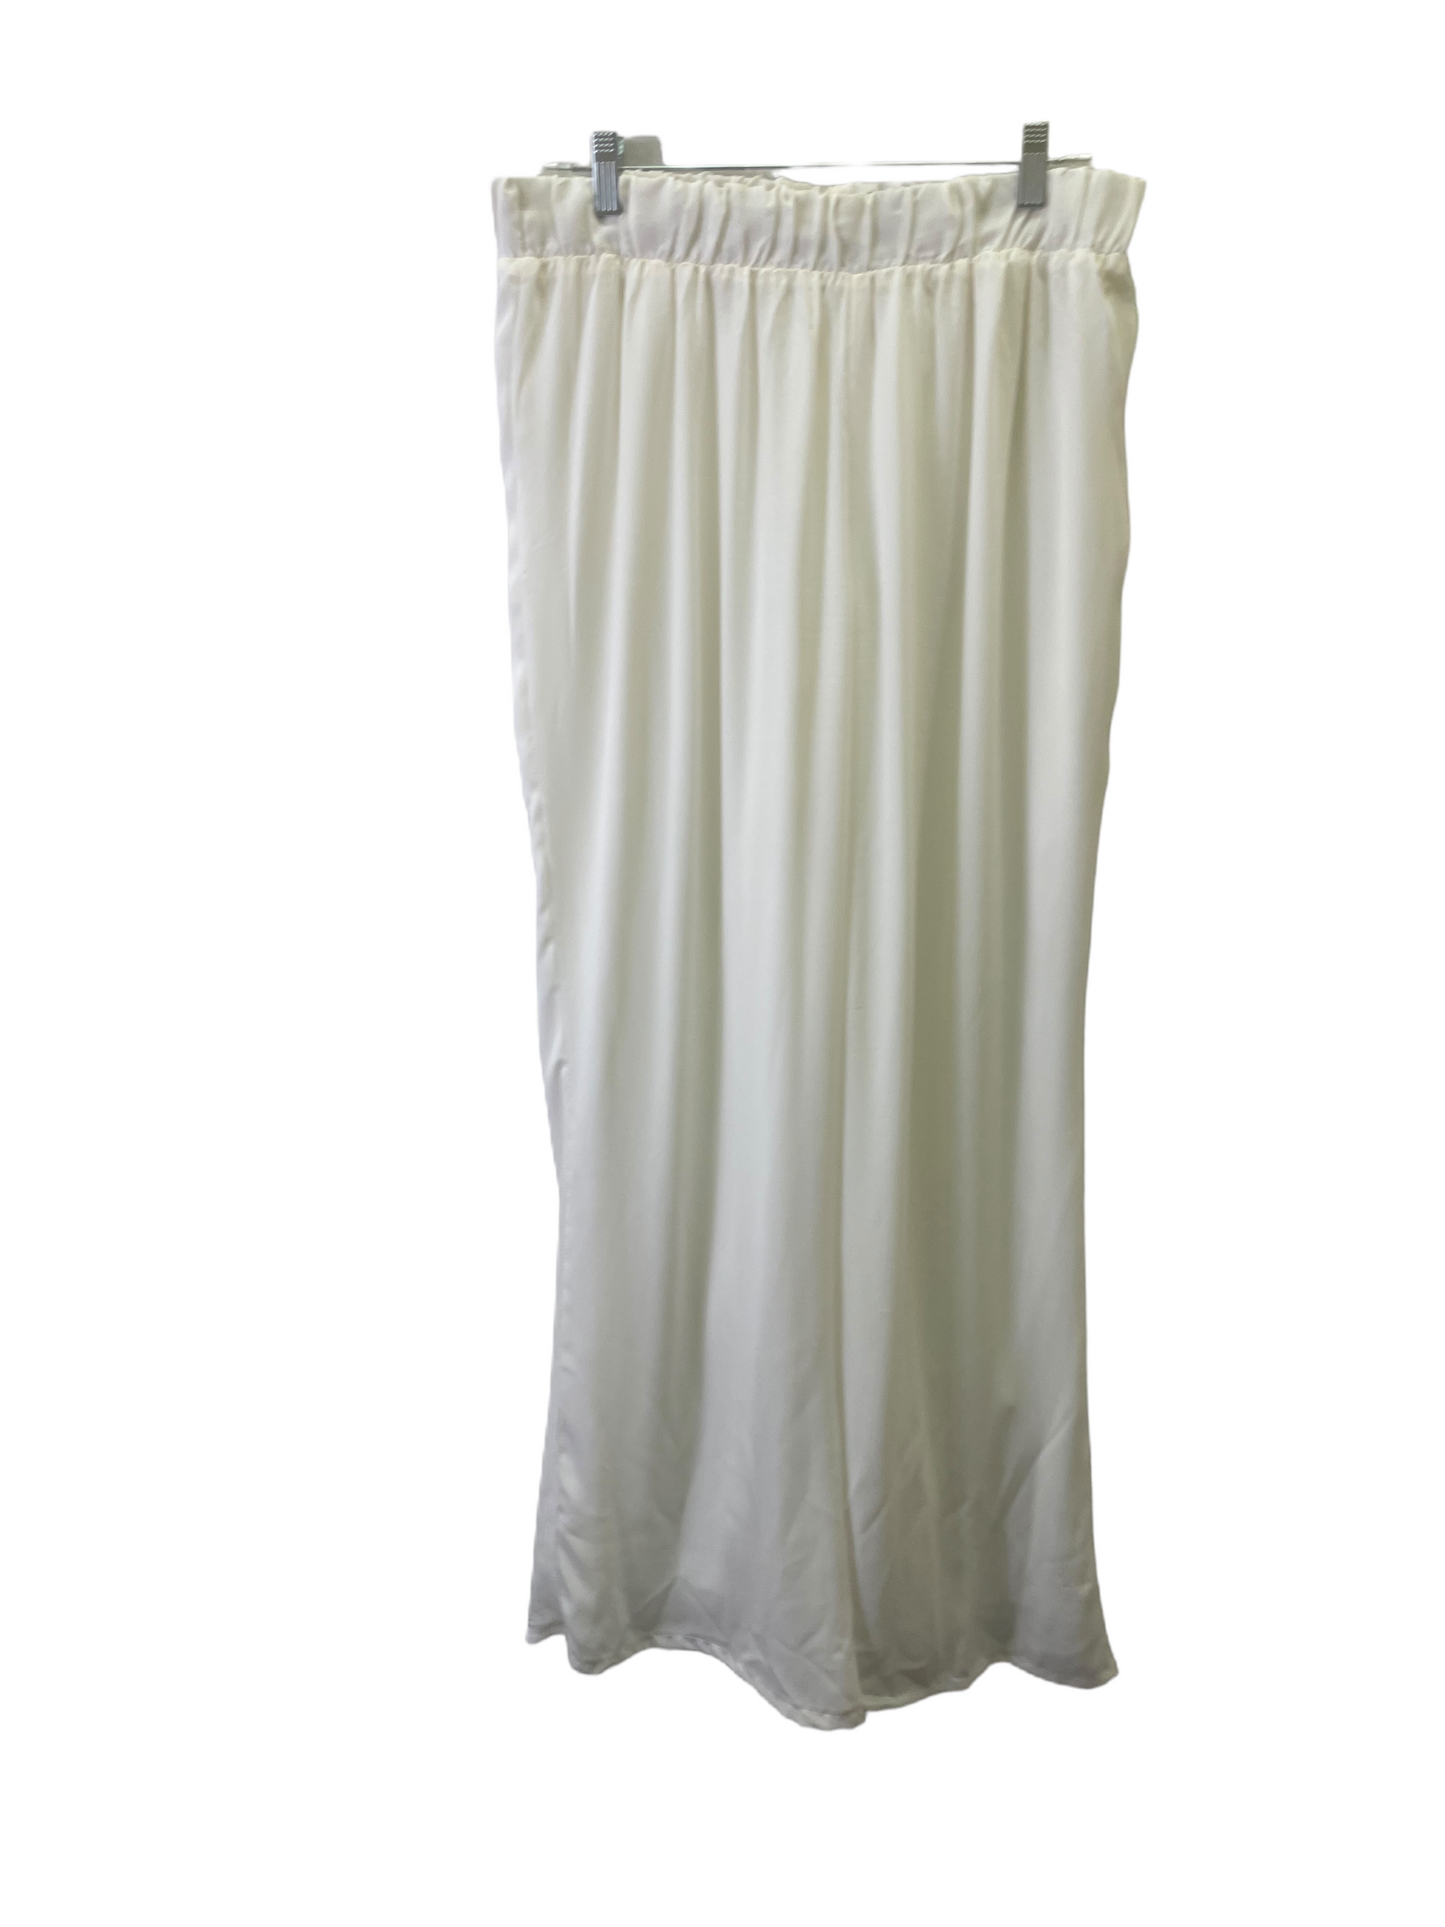 Pants Dress By Ashley Stewart  Size: 18